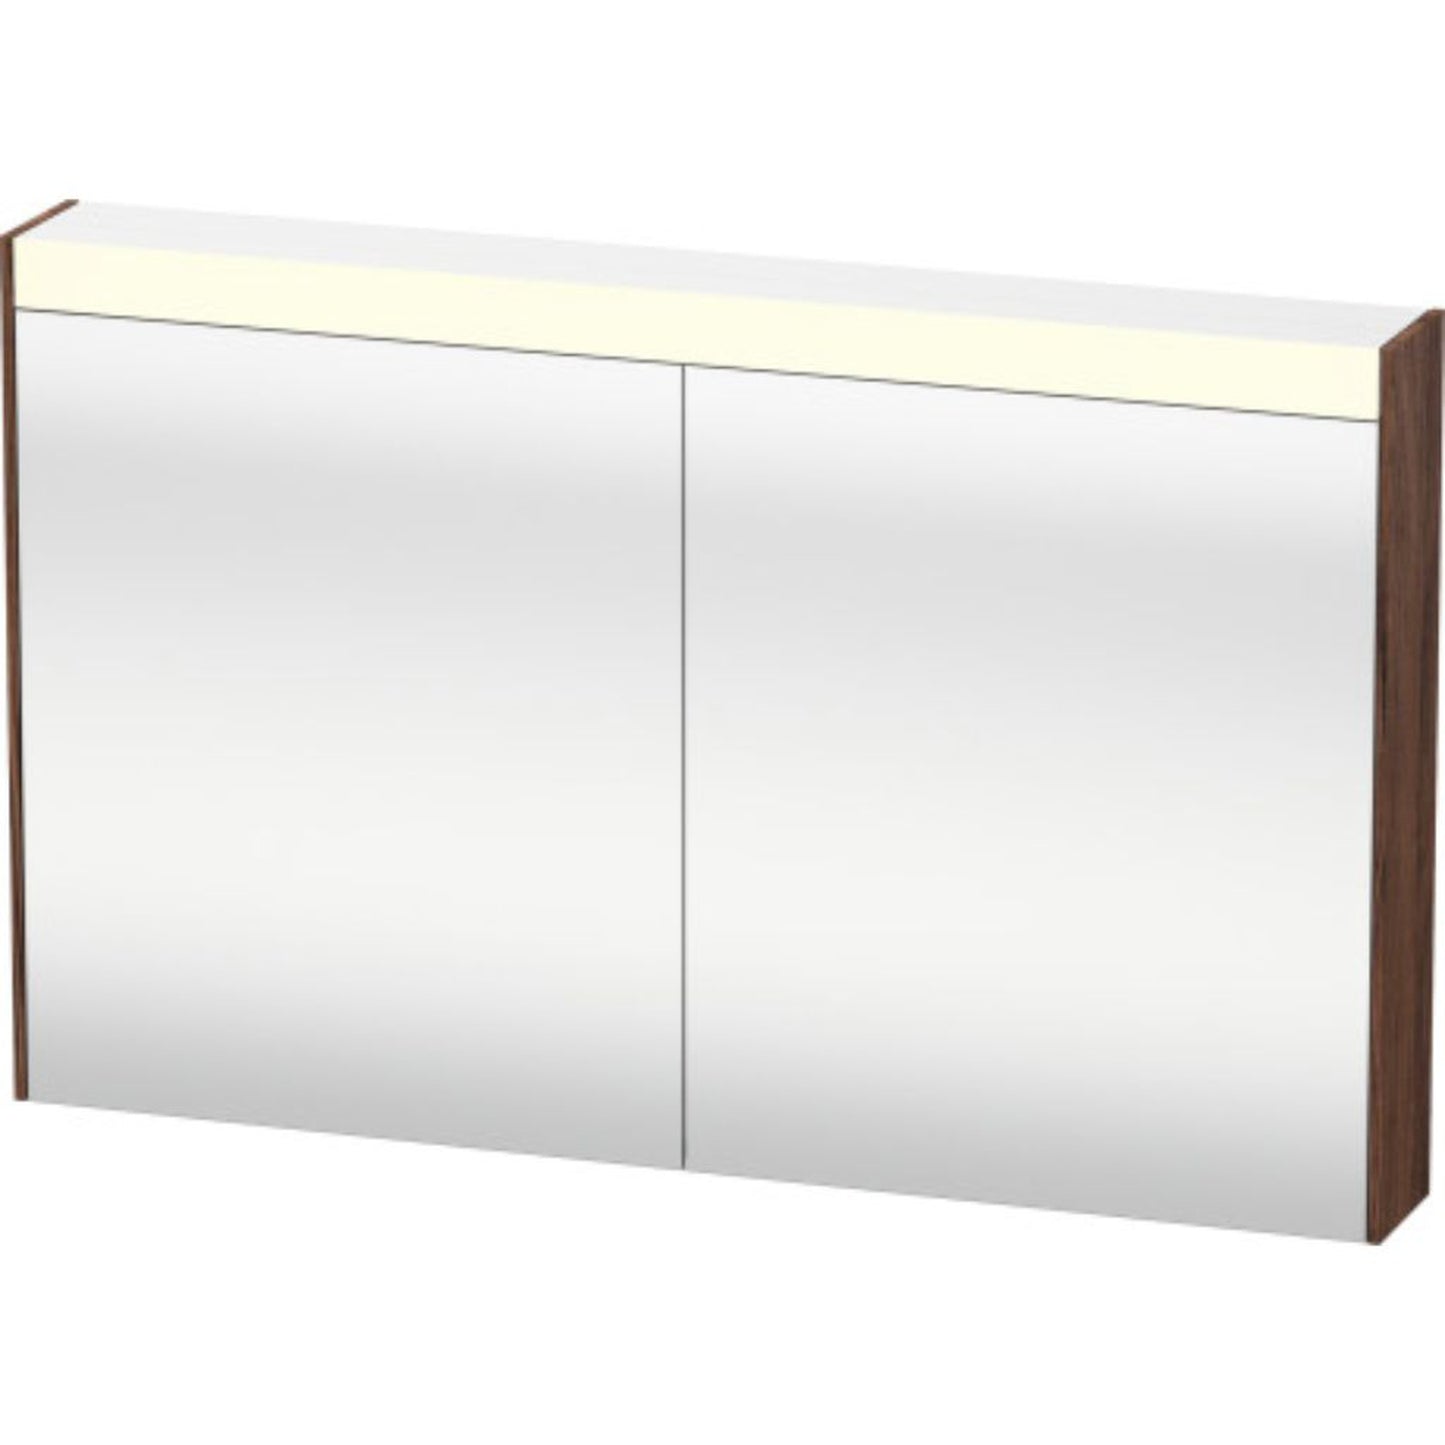 Duravit Brioso 40" x 30" x 6" Mirror Cabinet With Lighting Walnut Dark